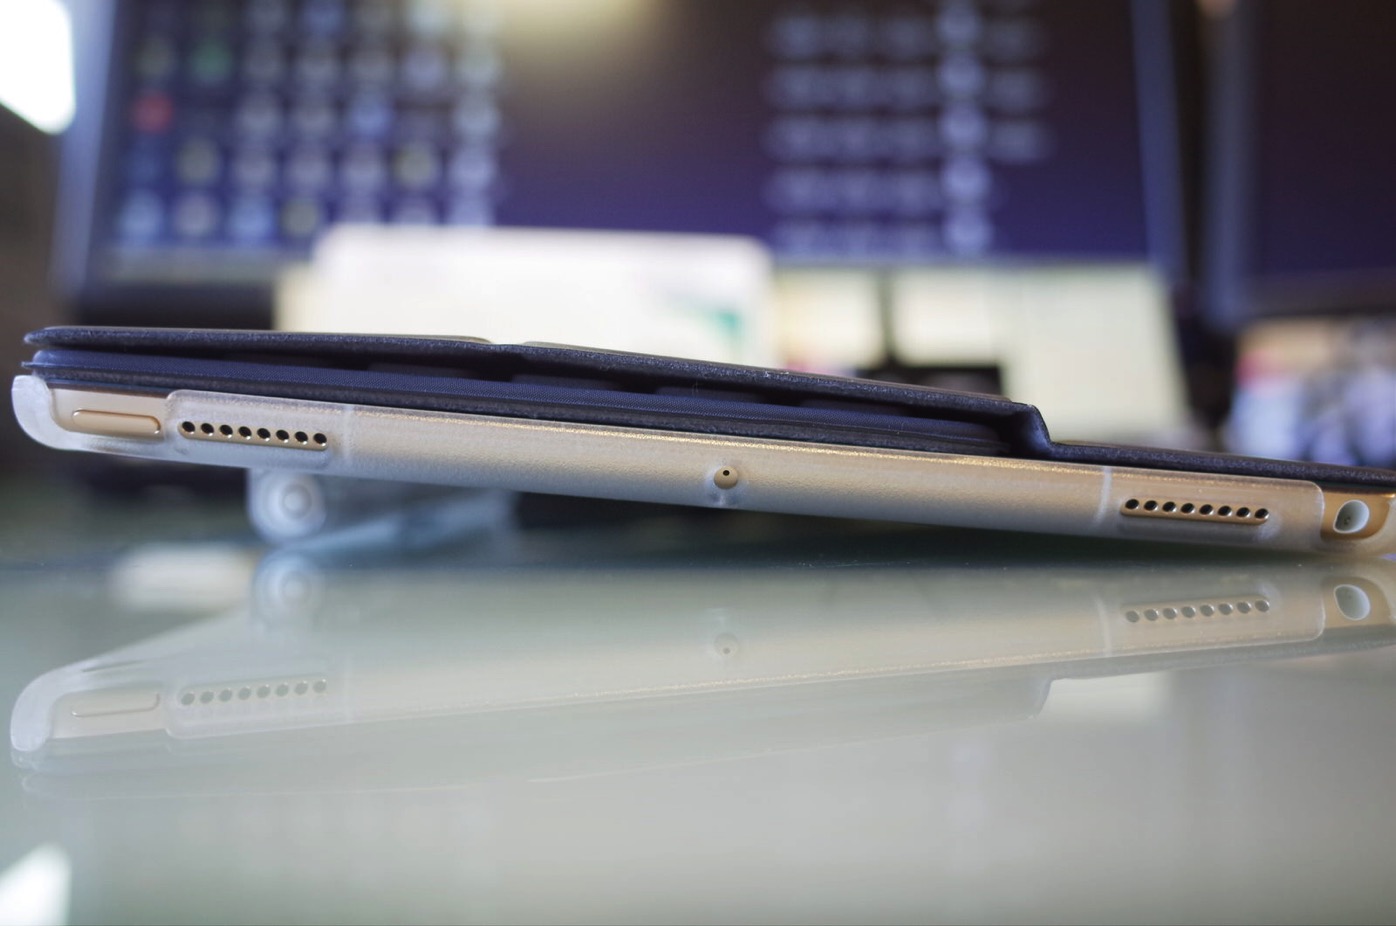 iPad Pro 10.5 ケース SwitchEasy CoverBuddy ハード バック カバー Apple Pencil 収納付き 純正 スマートキーボード 対応-13